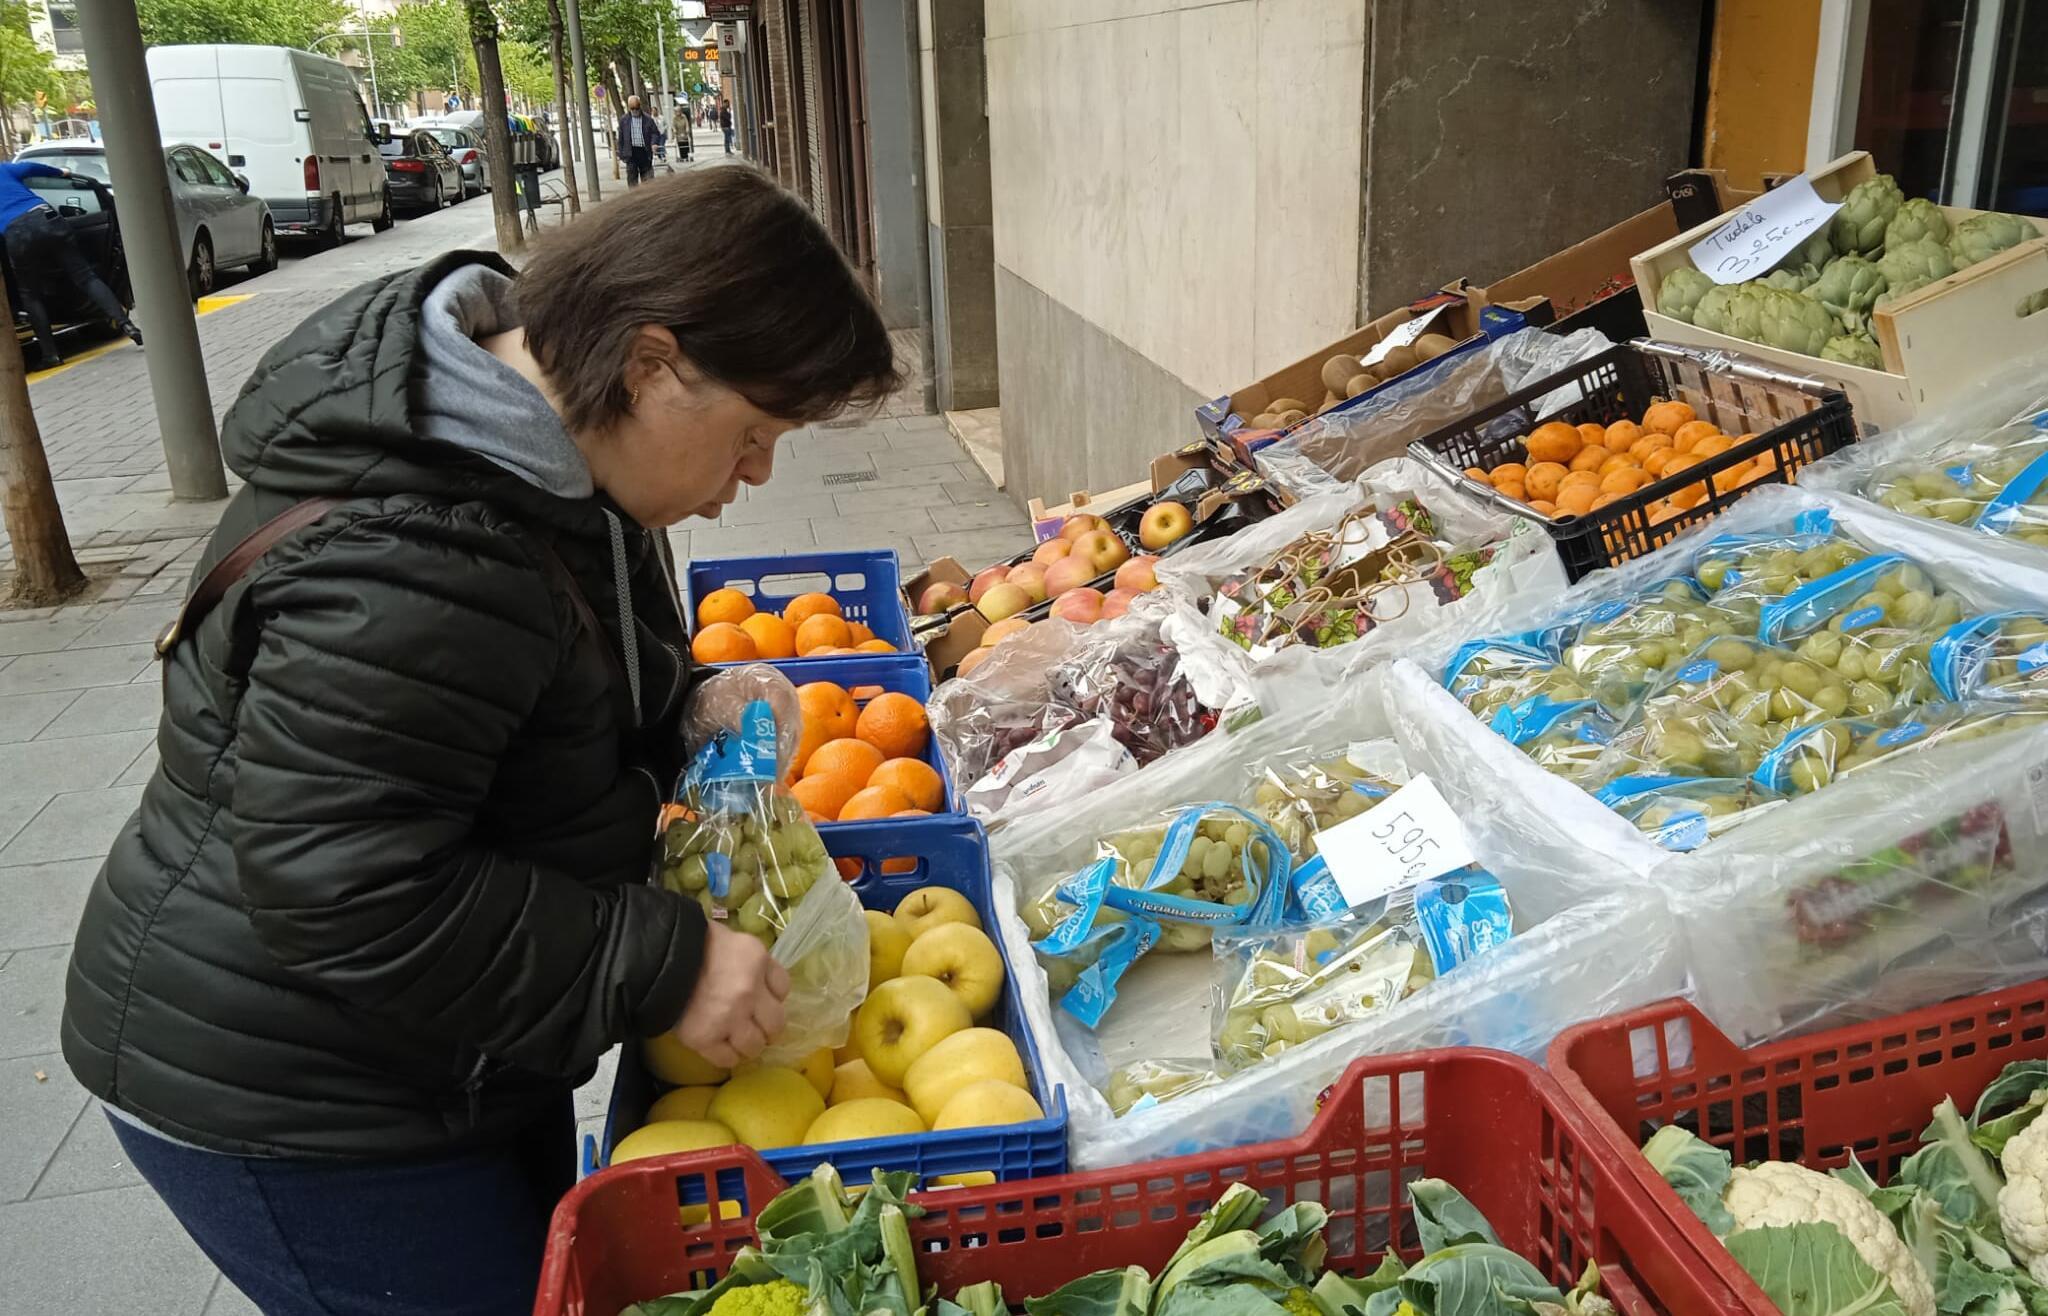 Dona amb discapacitat intel·lectual comprant fruita